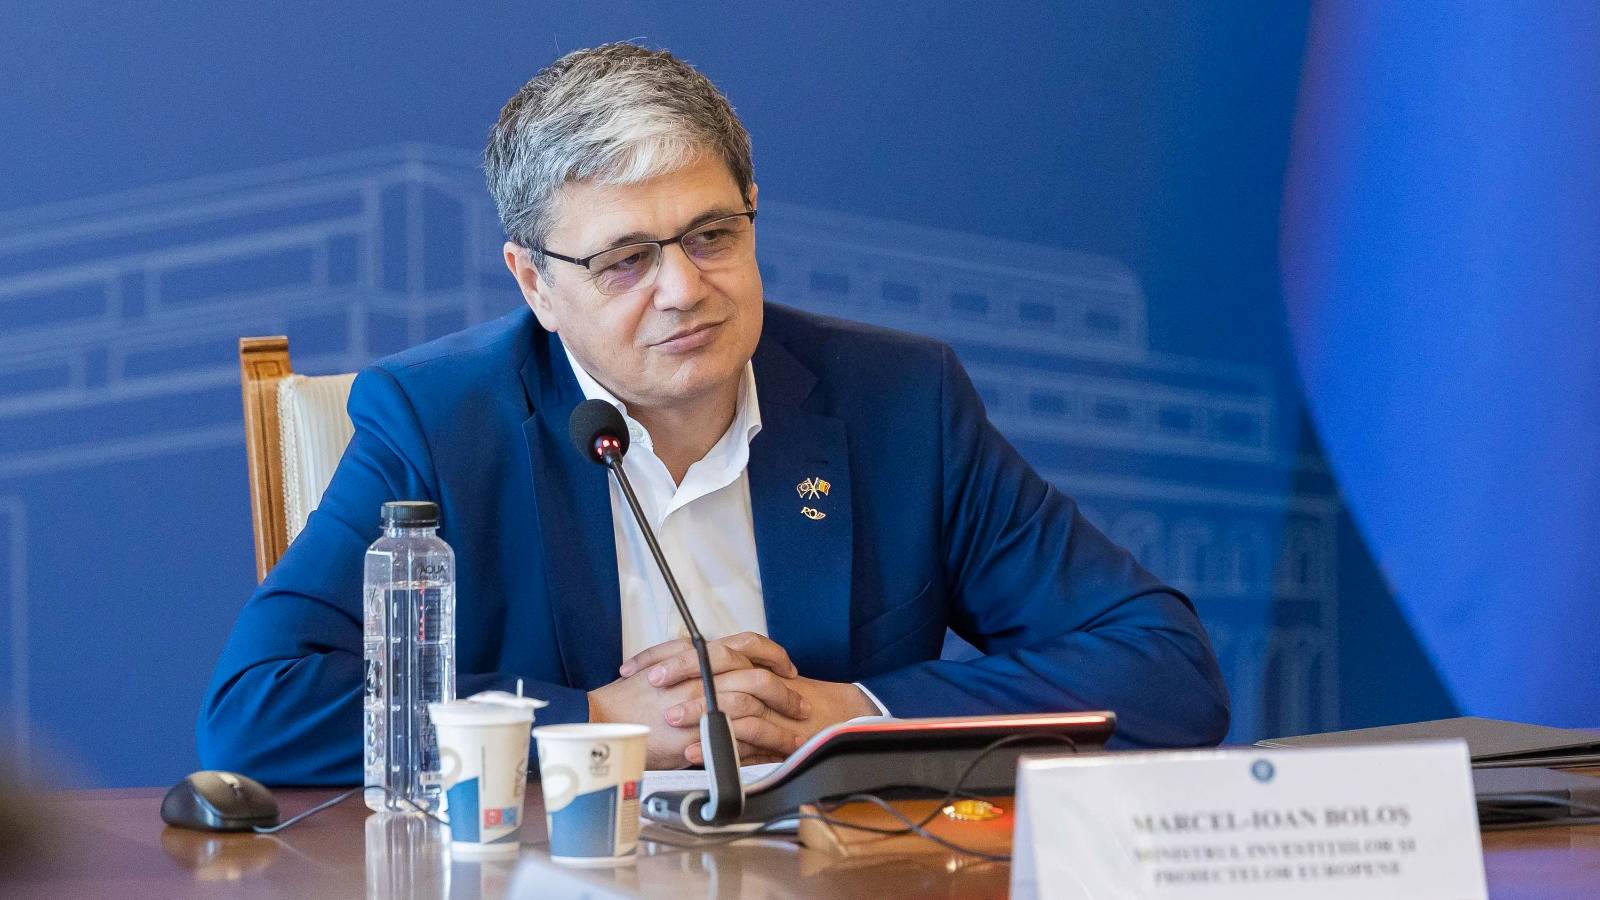 Marcel Bolos SORPRENDE a los rumanos GRAN NOTICIA Comisión Europea